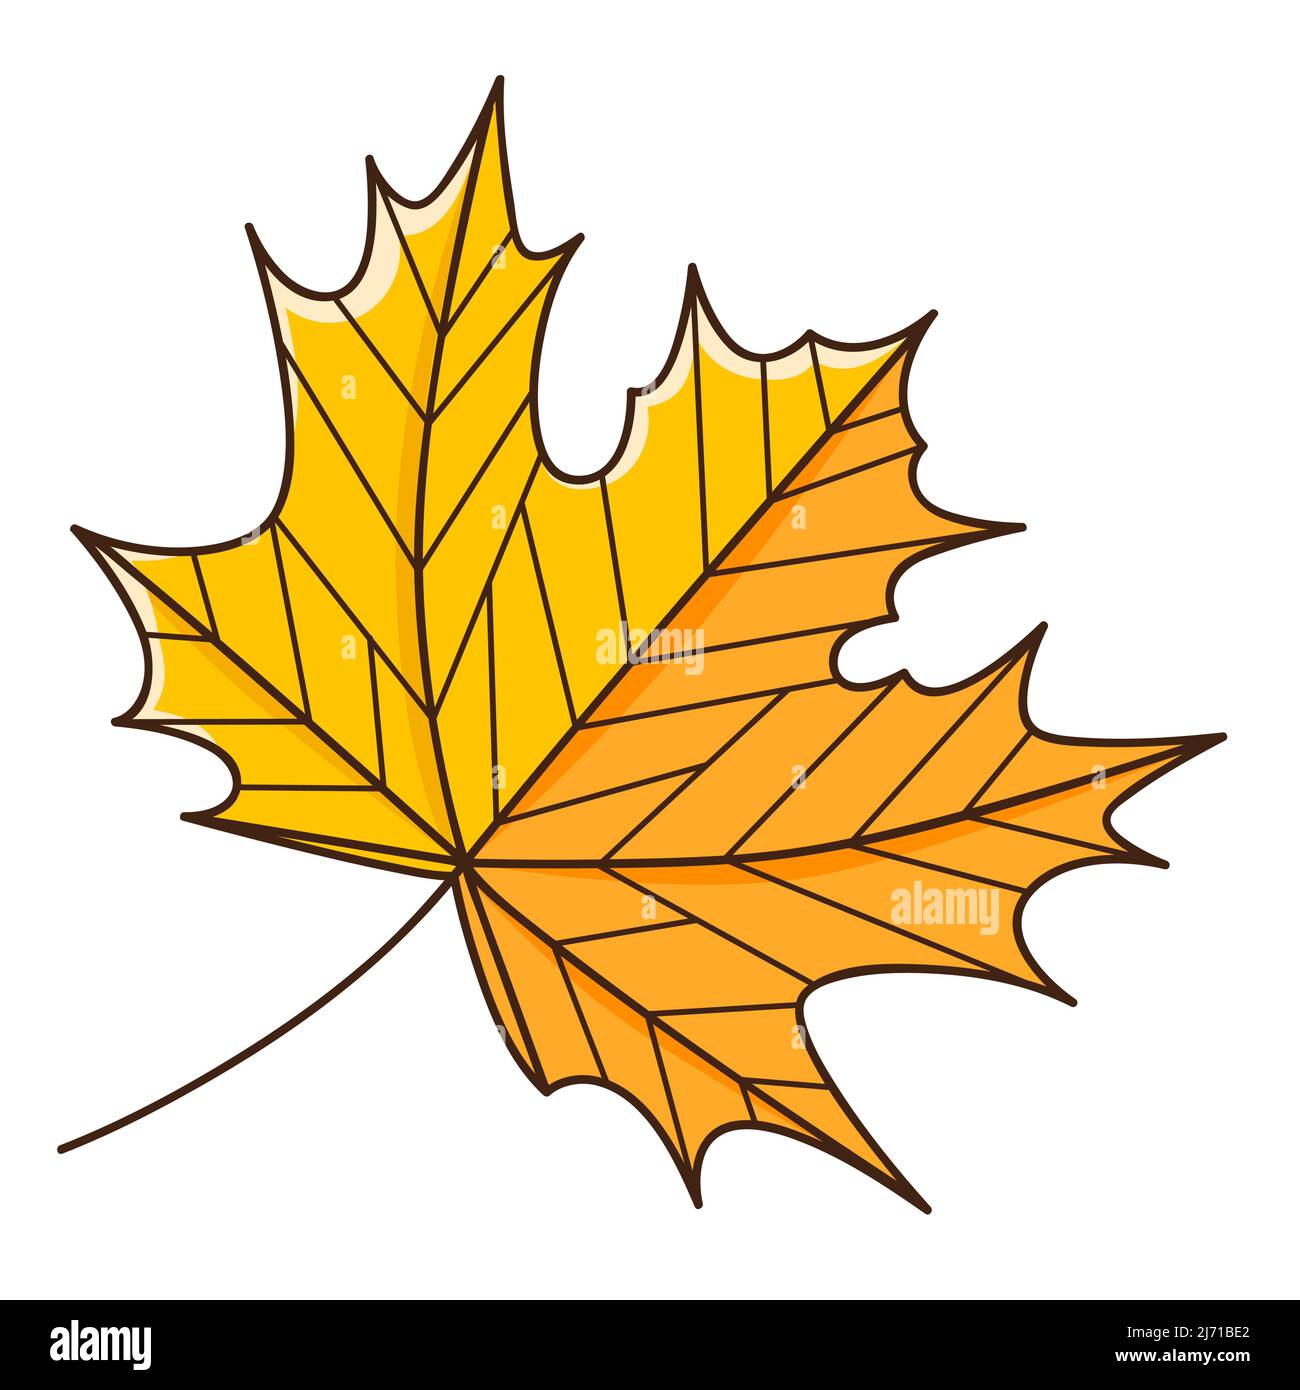 Foglia d'autunno di acero giallo arancio. Botanica, elemento di disegno vegetale con contorno. Ora di autunno. Doodle, disegnato a mano. Design piatto. Illustrazione vettoriale a colori Illustrazione Vettoriale